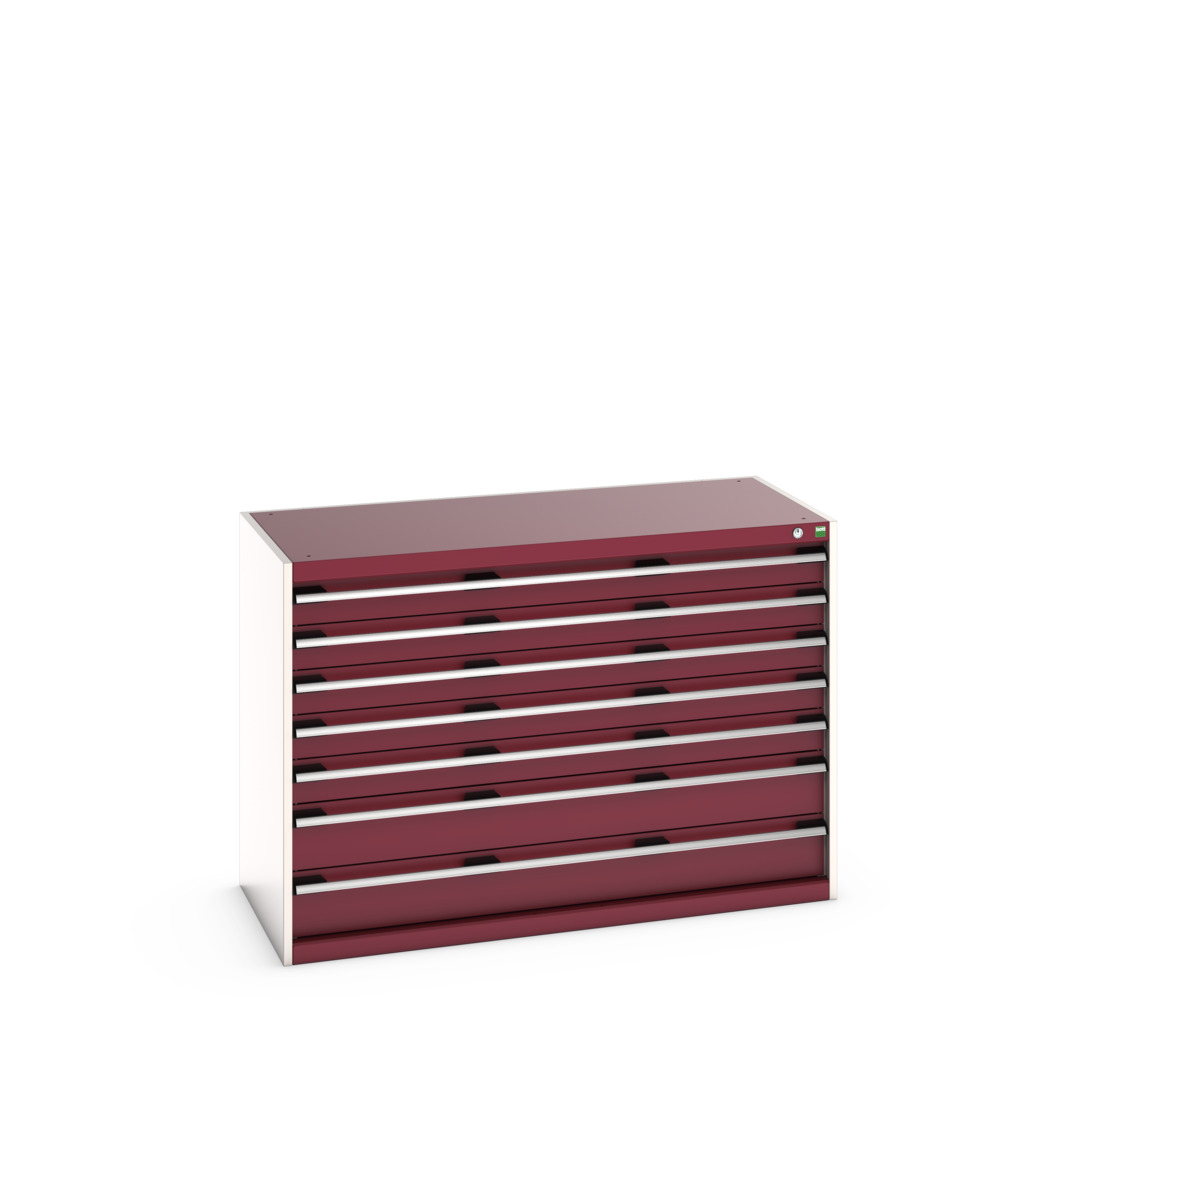 40022118.24V - cubio drawer cabinet